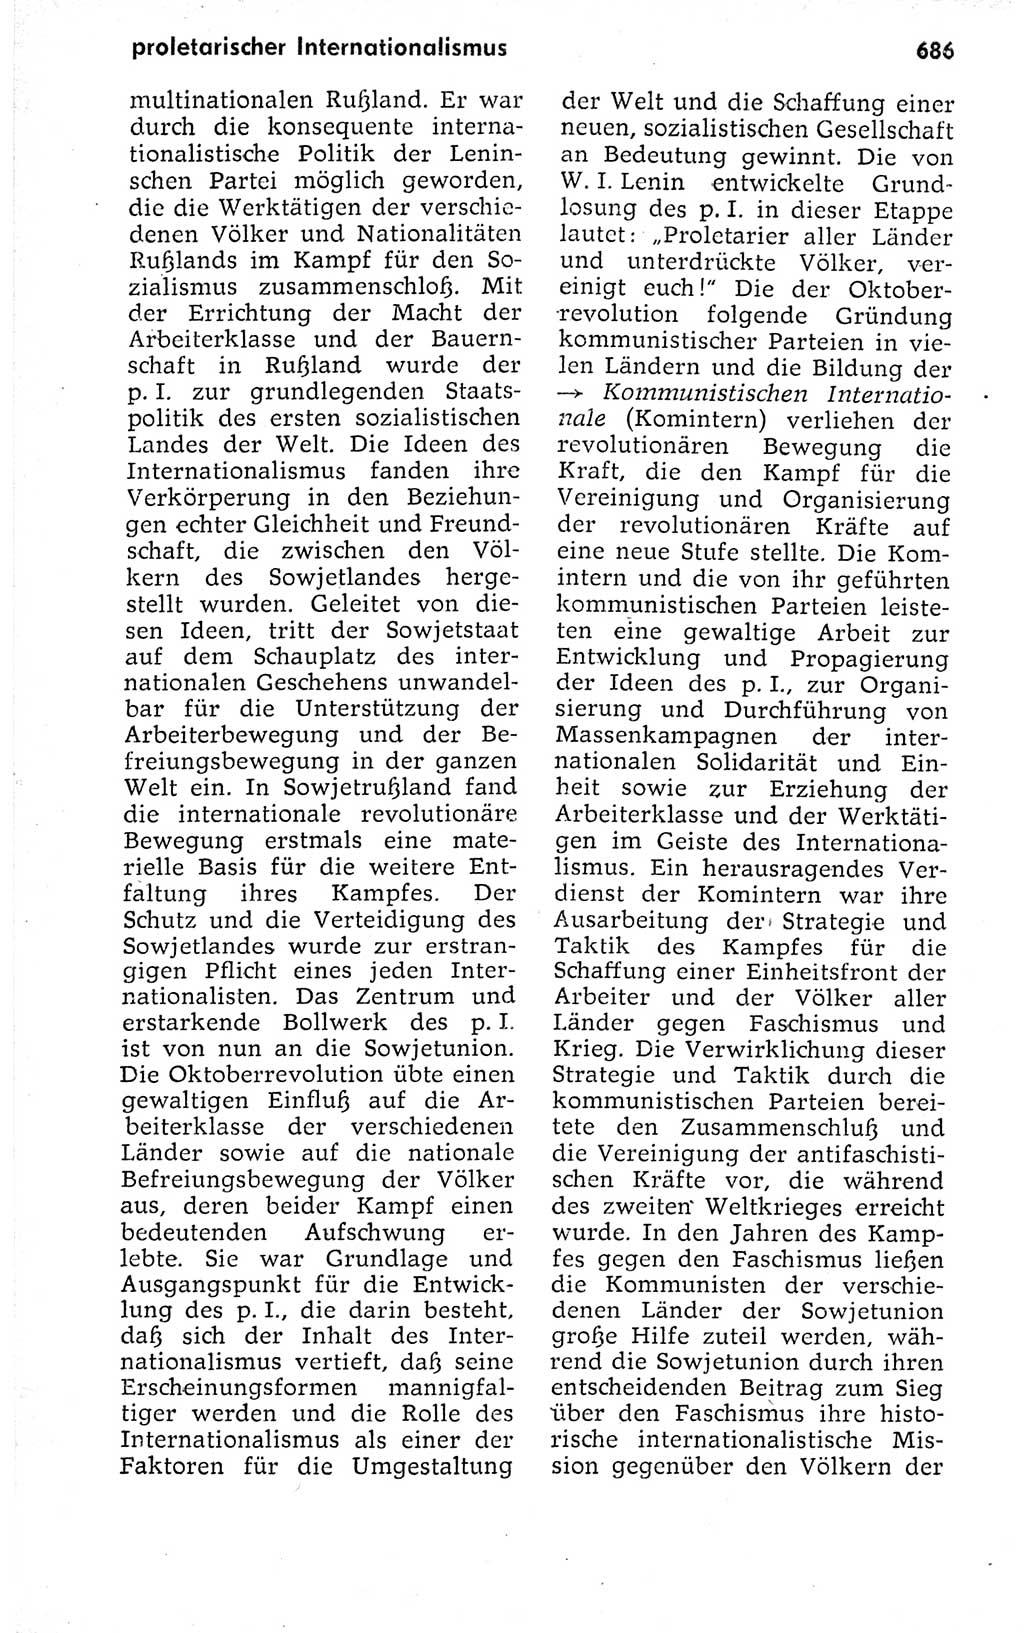 Kleines politisches Wörterbuch [Deutsche Demokratische Republik (DDR)] 1973, Seite 686 (Kl. pol. Wb. DDR 1973, S. 686)